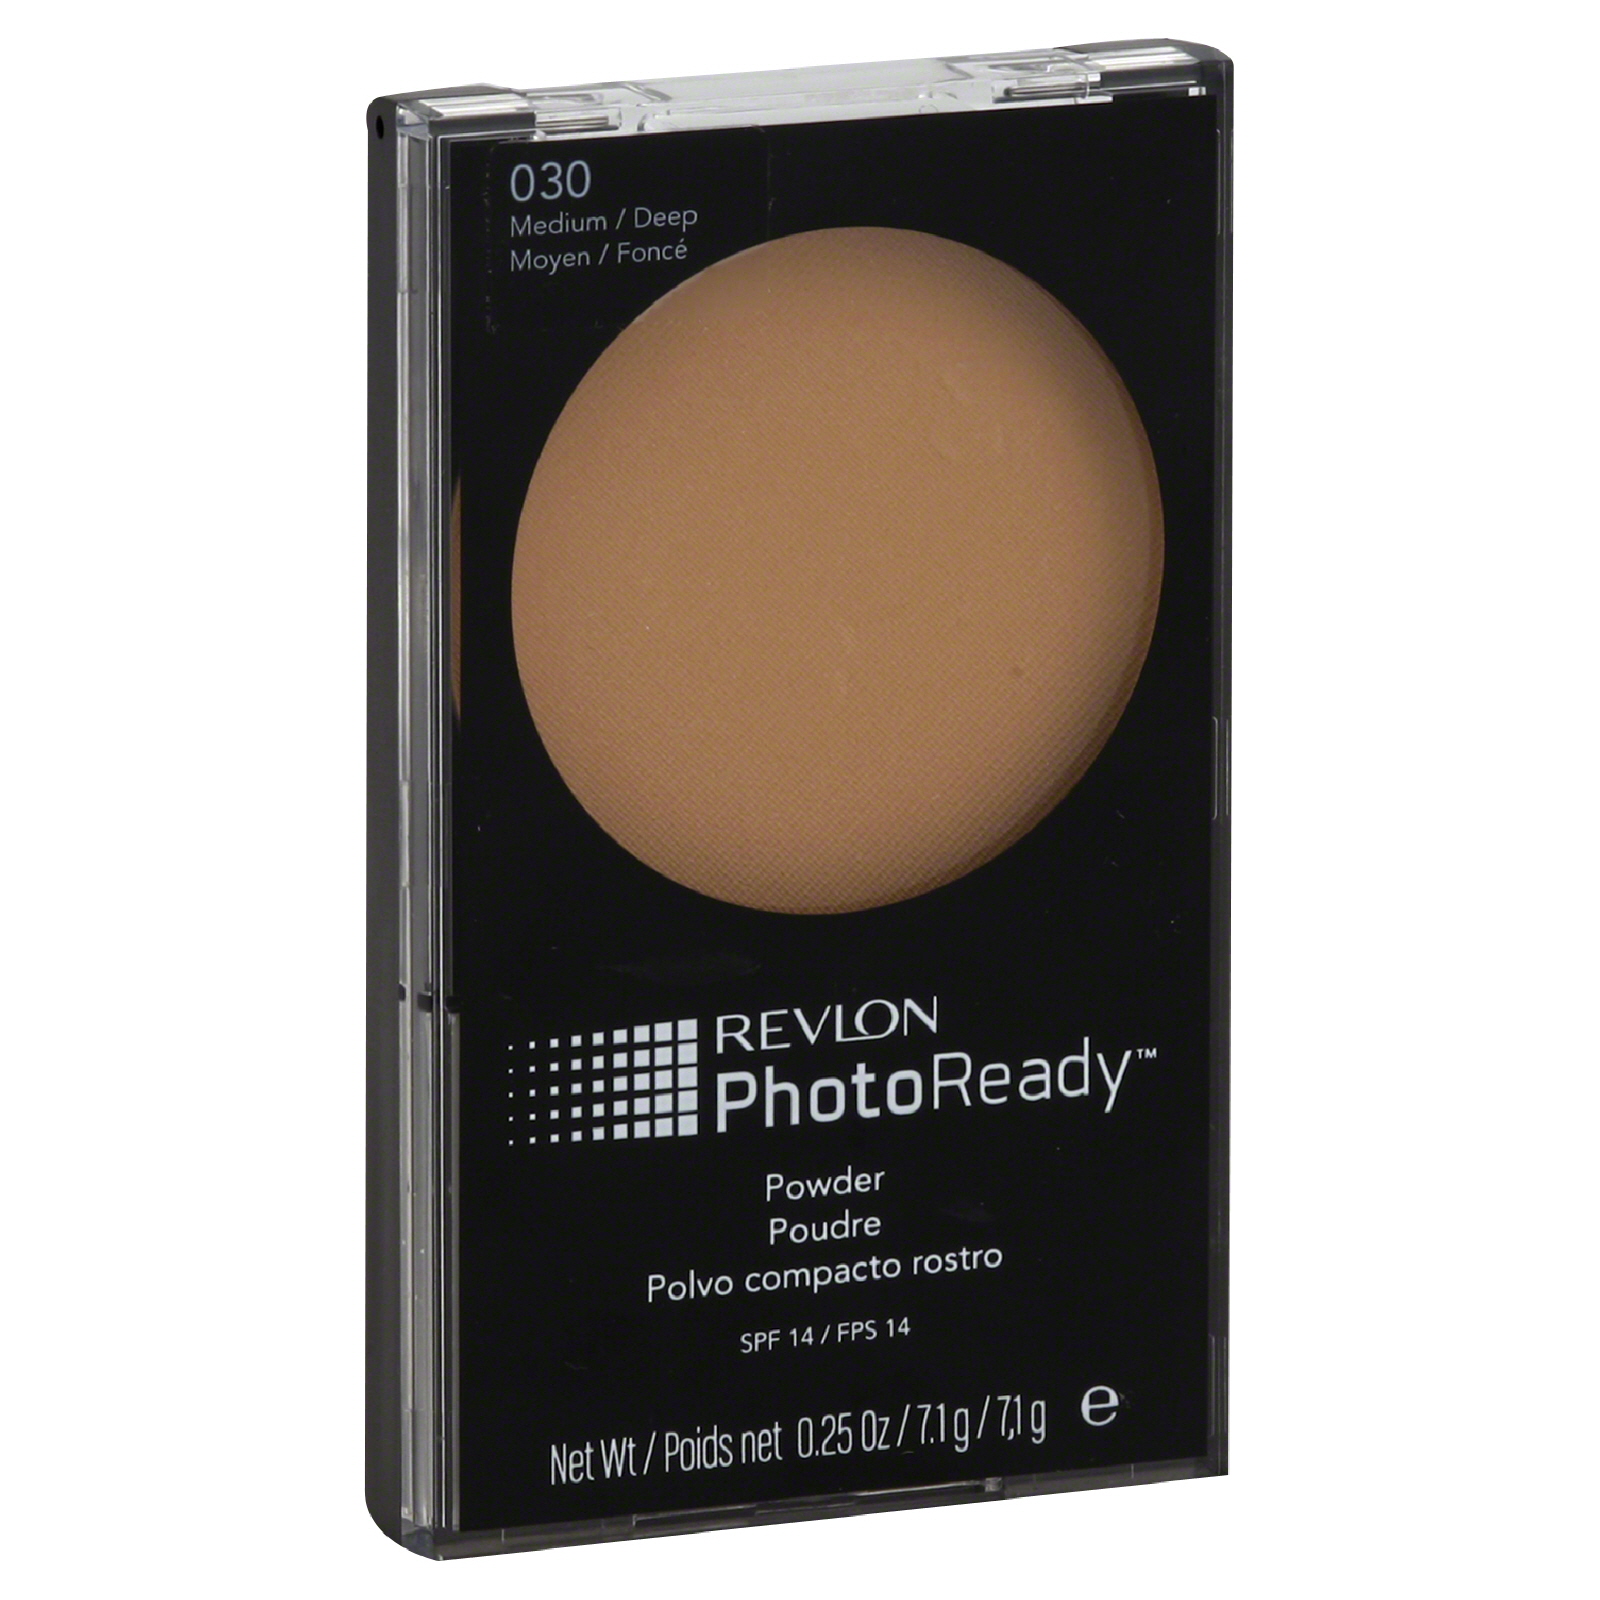 Photoready Powder, Medium/Deep 030, 0.25 oz (7.1 g)